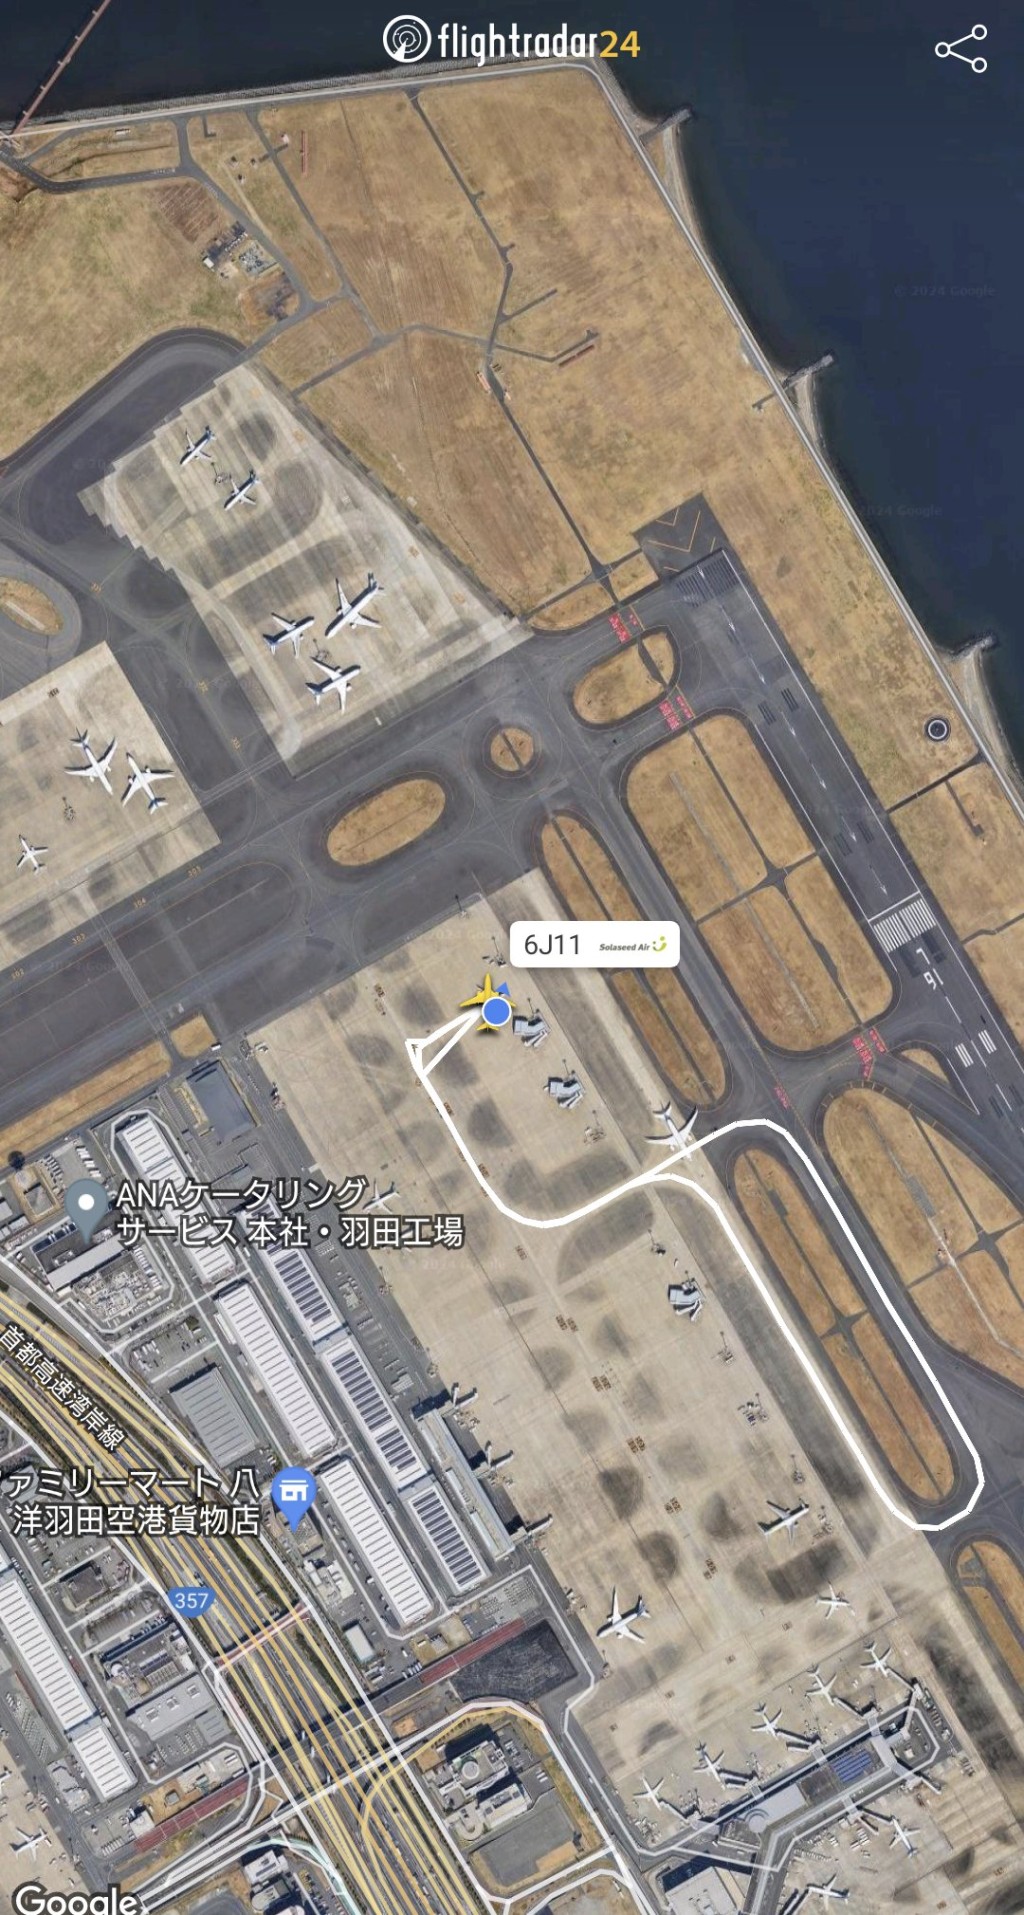 網上航班資訊顯示，飛機在跑道兜大圈折返停機坪，隨後重新新起飛。 flightradar24